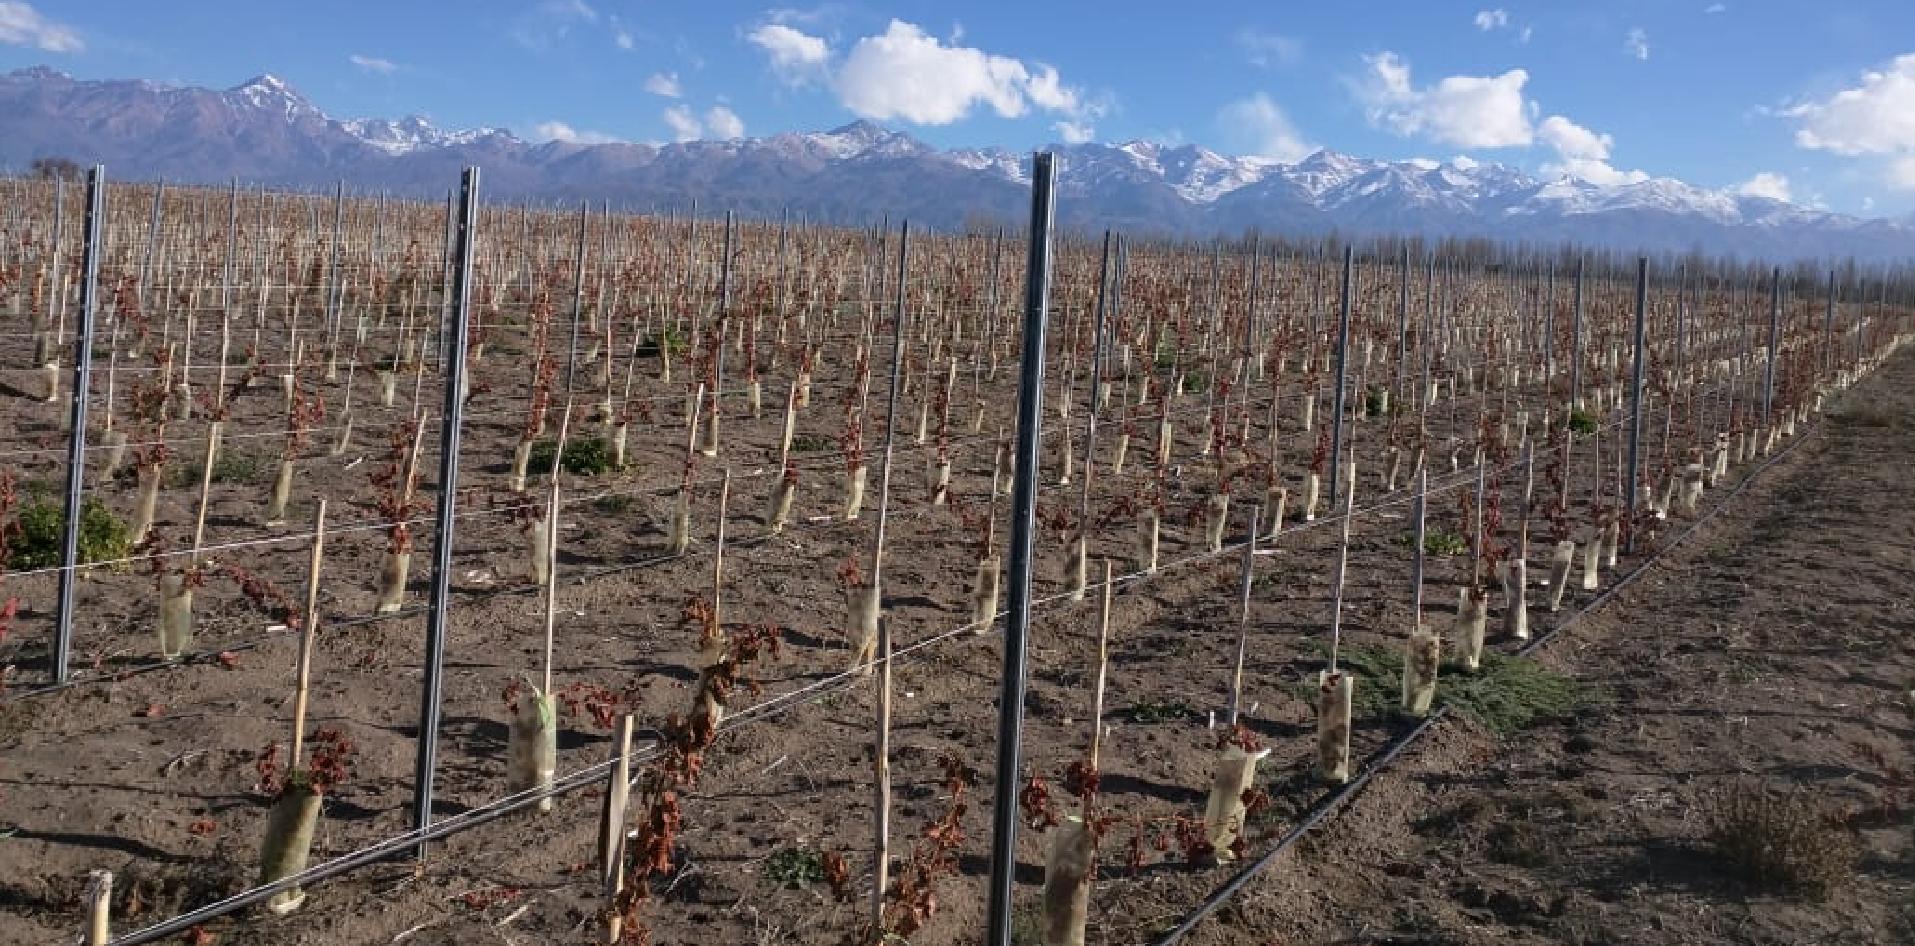 Postes de zinc para vitivinicultura; INTI Mendoza